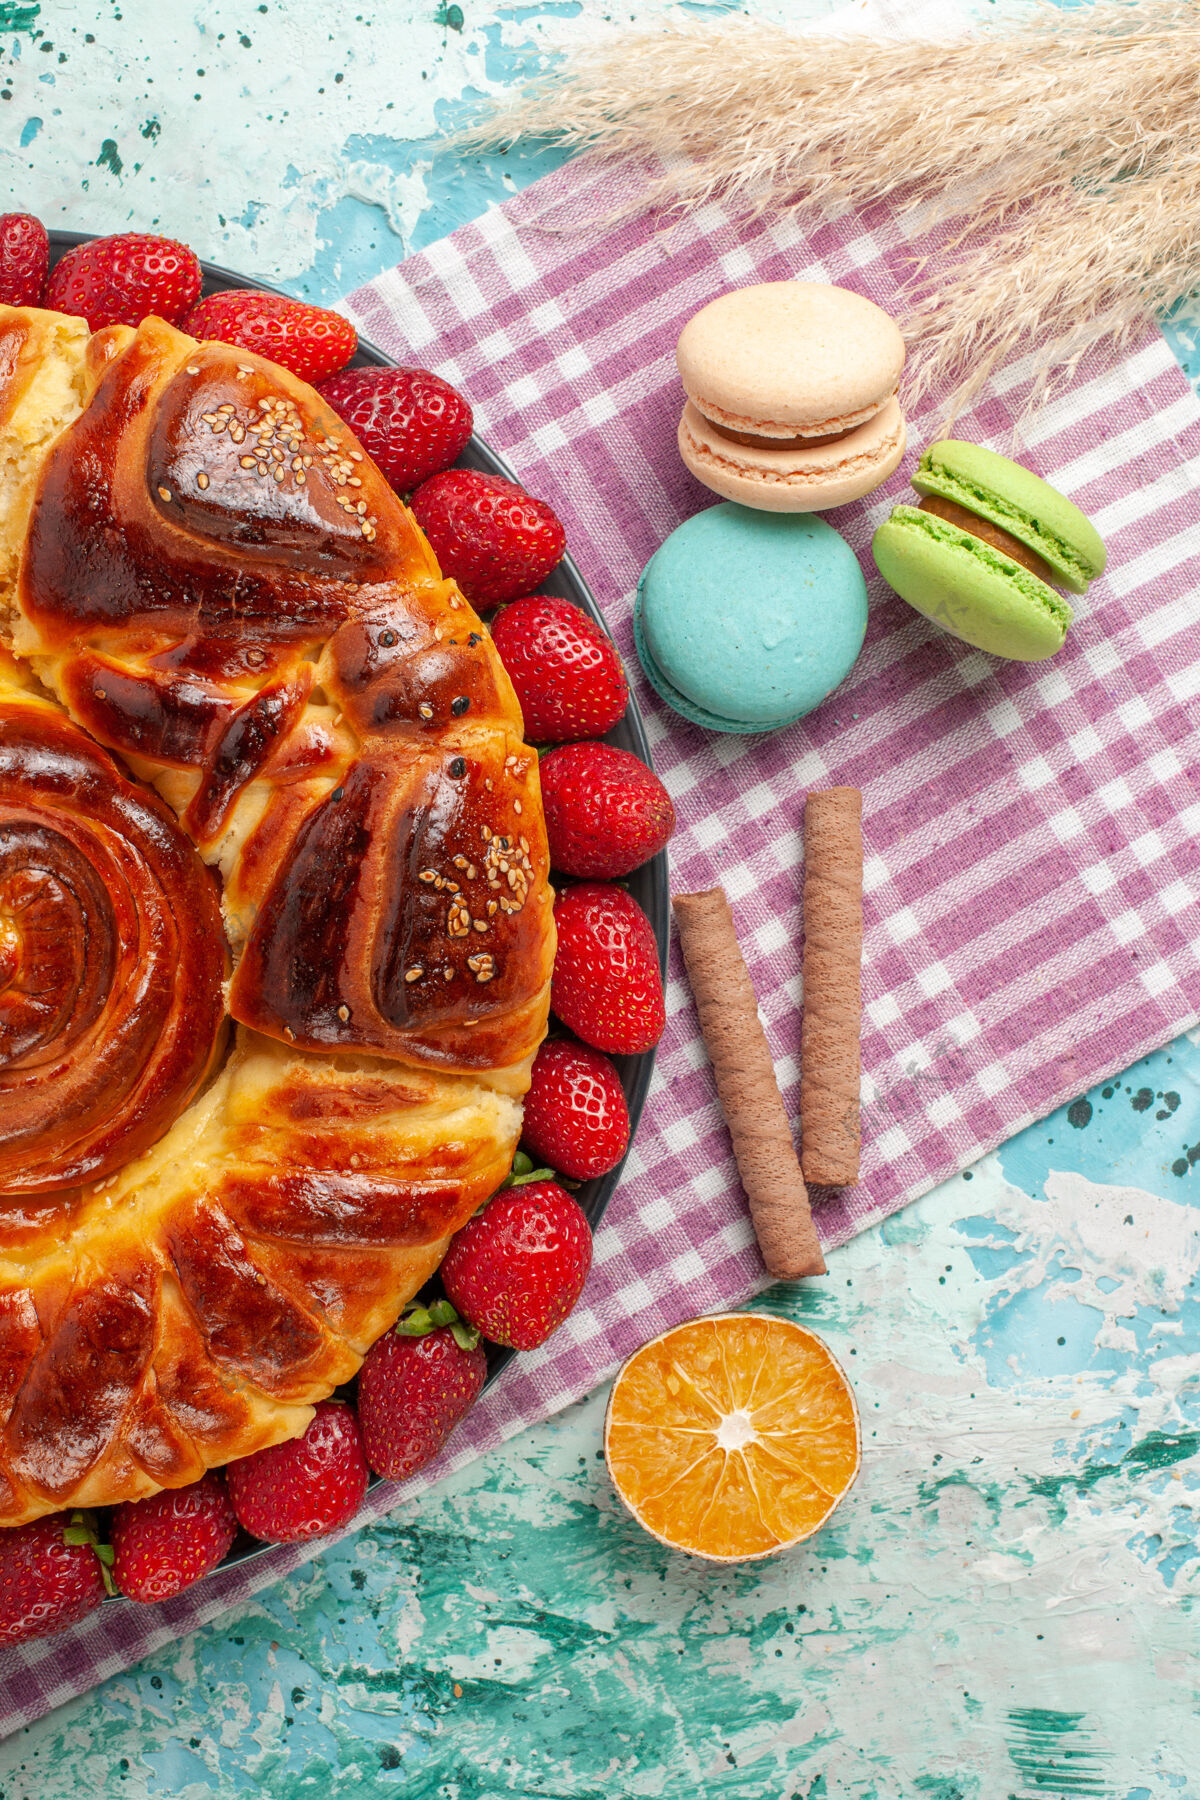 糖俯瞰草莓派与法国马卡龙在蓝色的表面食物顶午餐